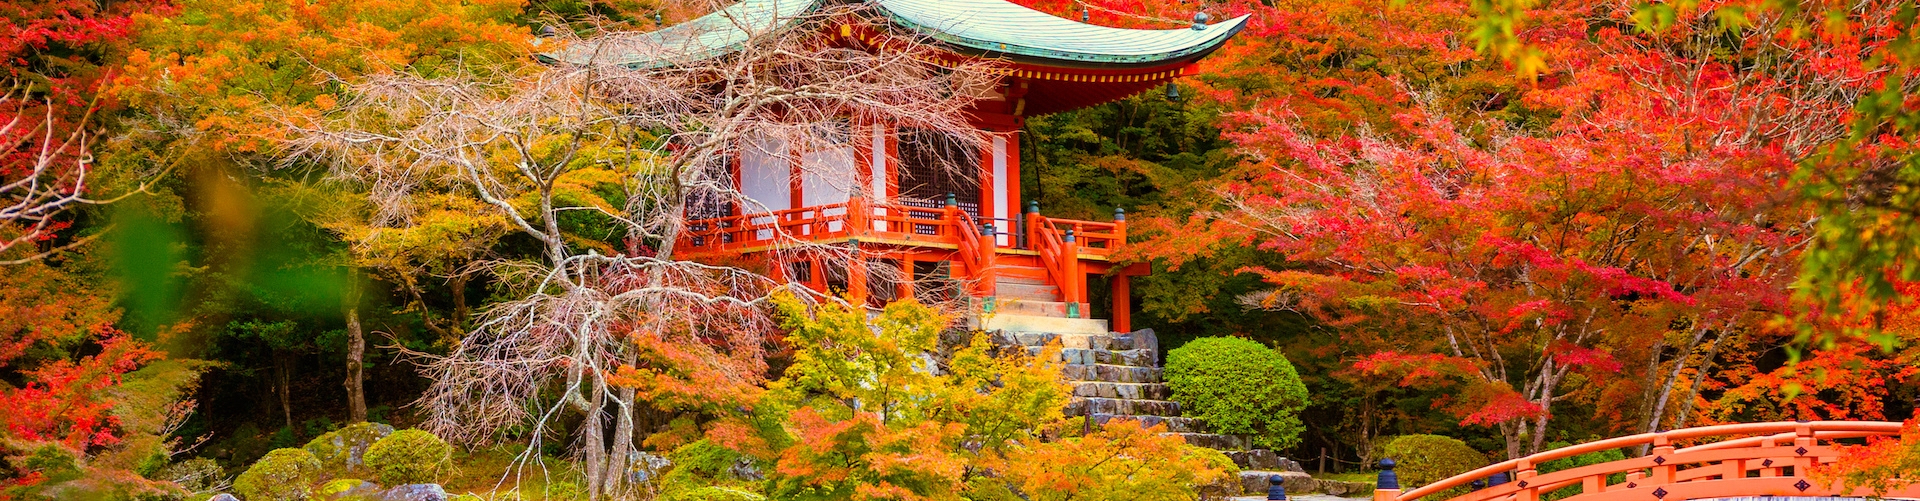 Giappone, nei colori dell'autunno